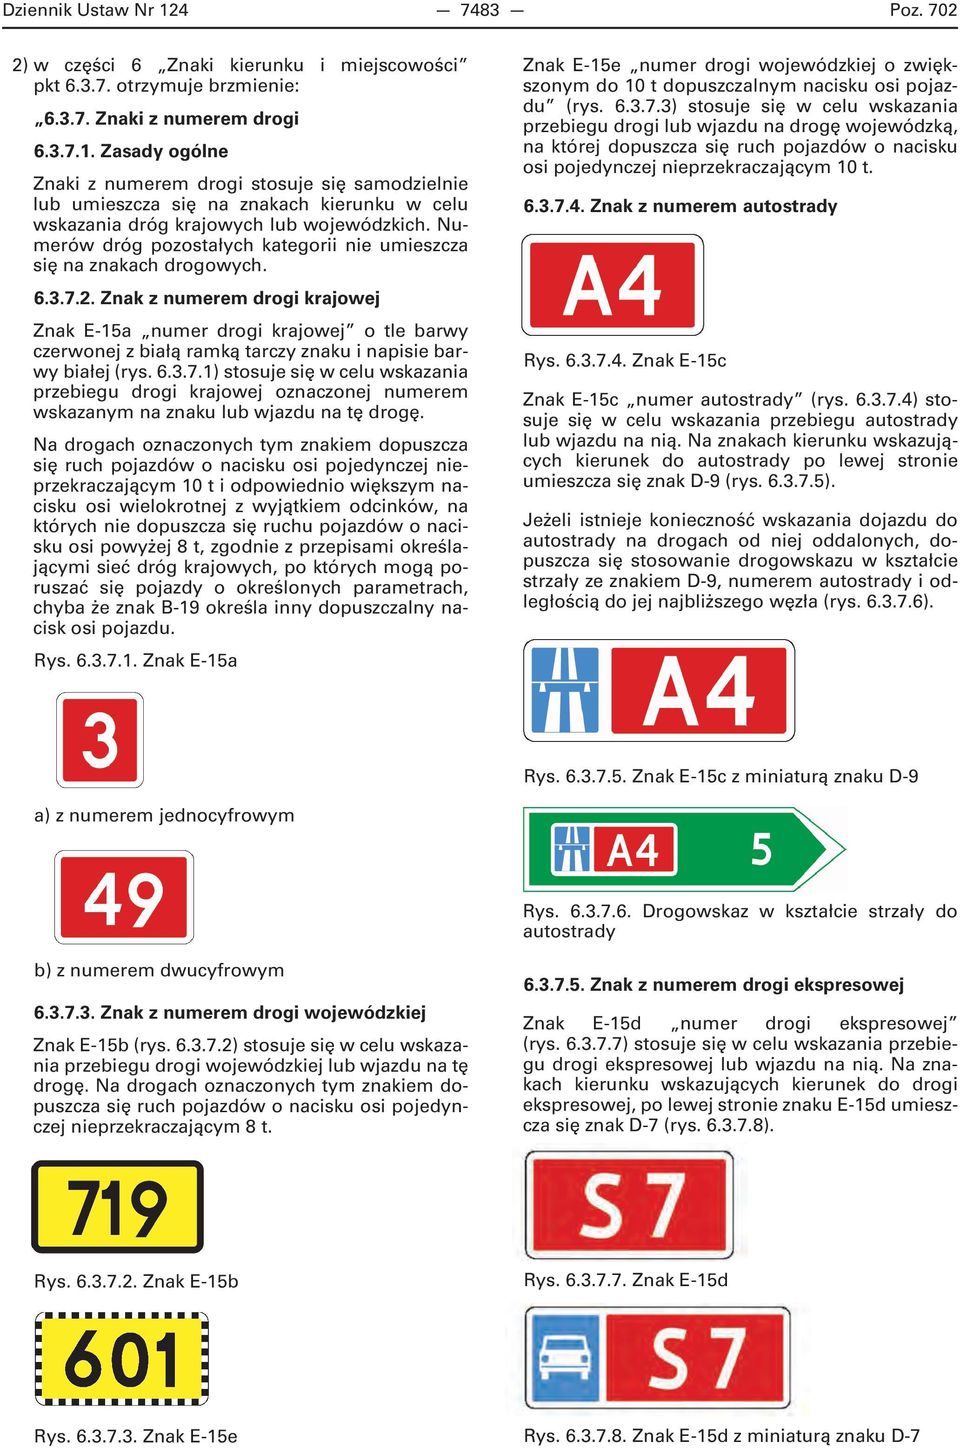 Znak z numerem drogi krajowej Znak E-15a numer drogi krajowej o tle barwy czerwonej z białą ramką tarczy znaku i napisie barwy białej (rys. 6.3.7.